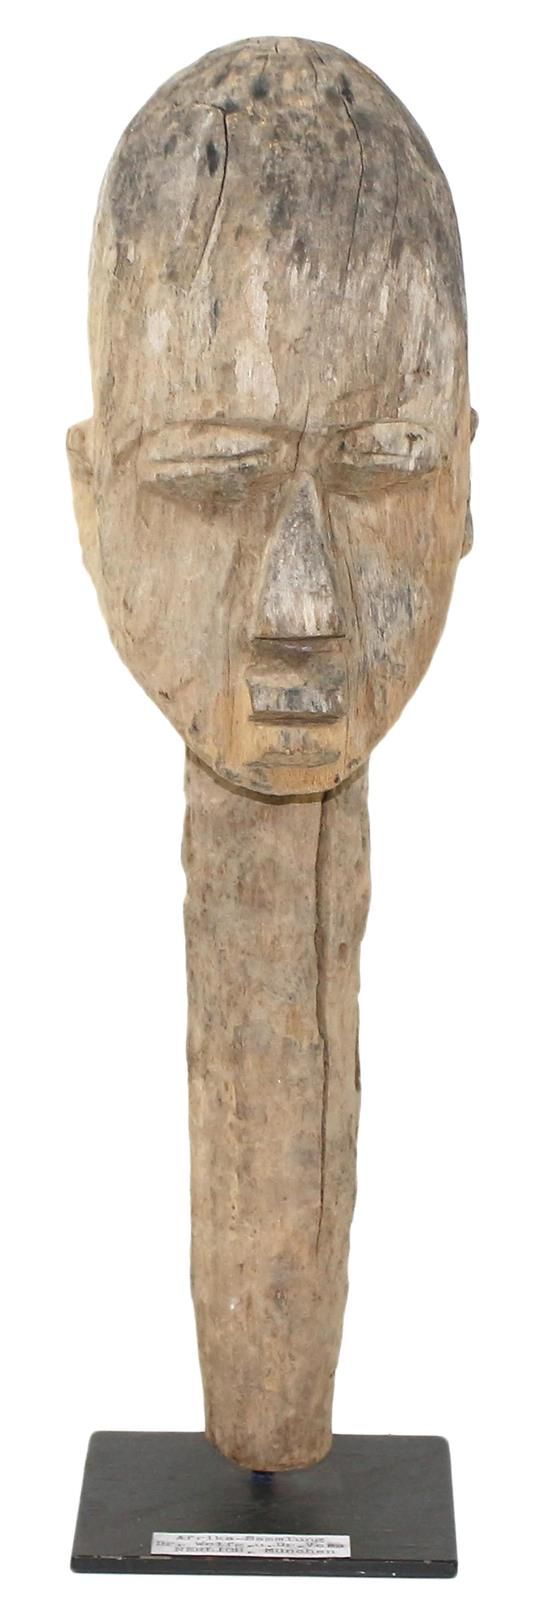 Lobi Kopfskulptur Burkina Faso. Alte, schwere Skulptur auf langem Hals. Helles H&hellip;